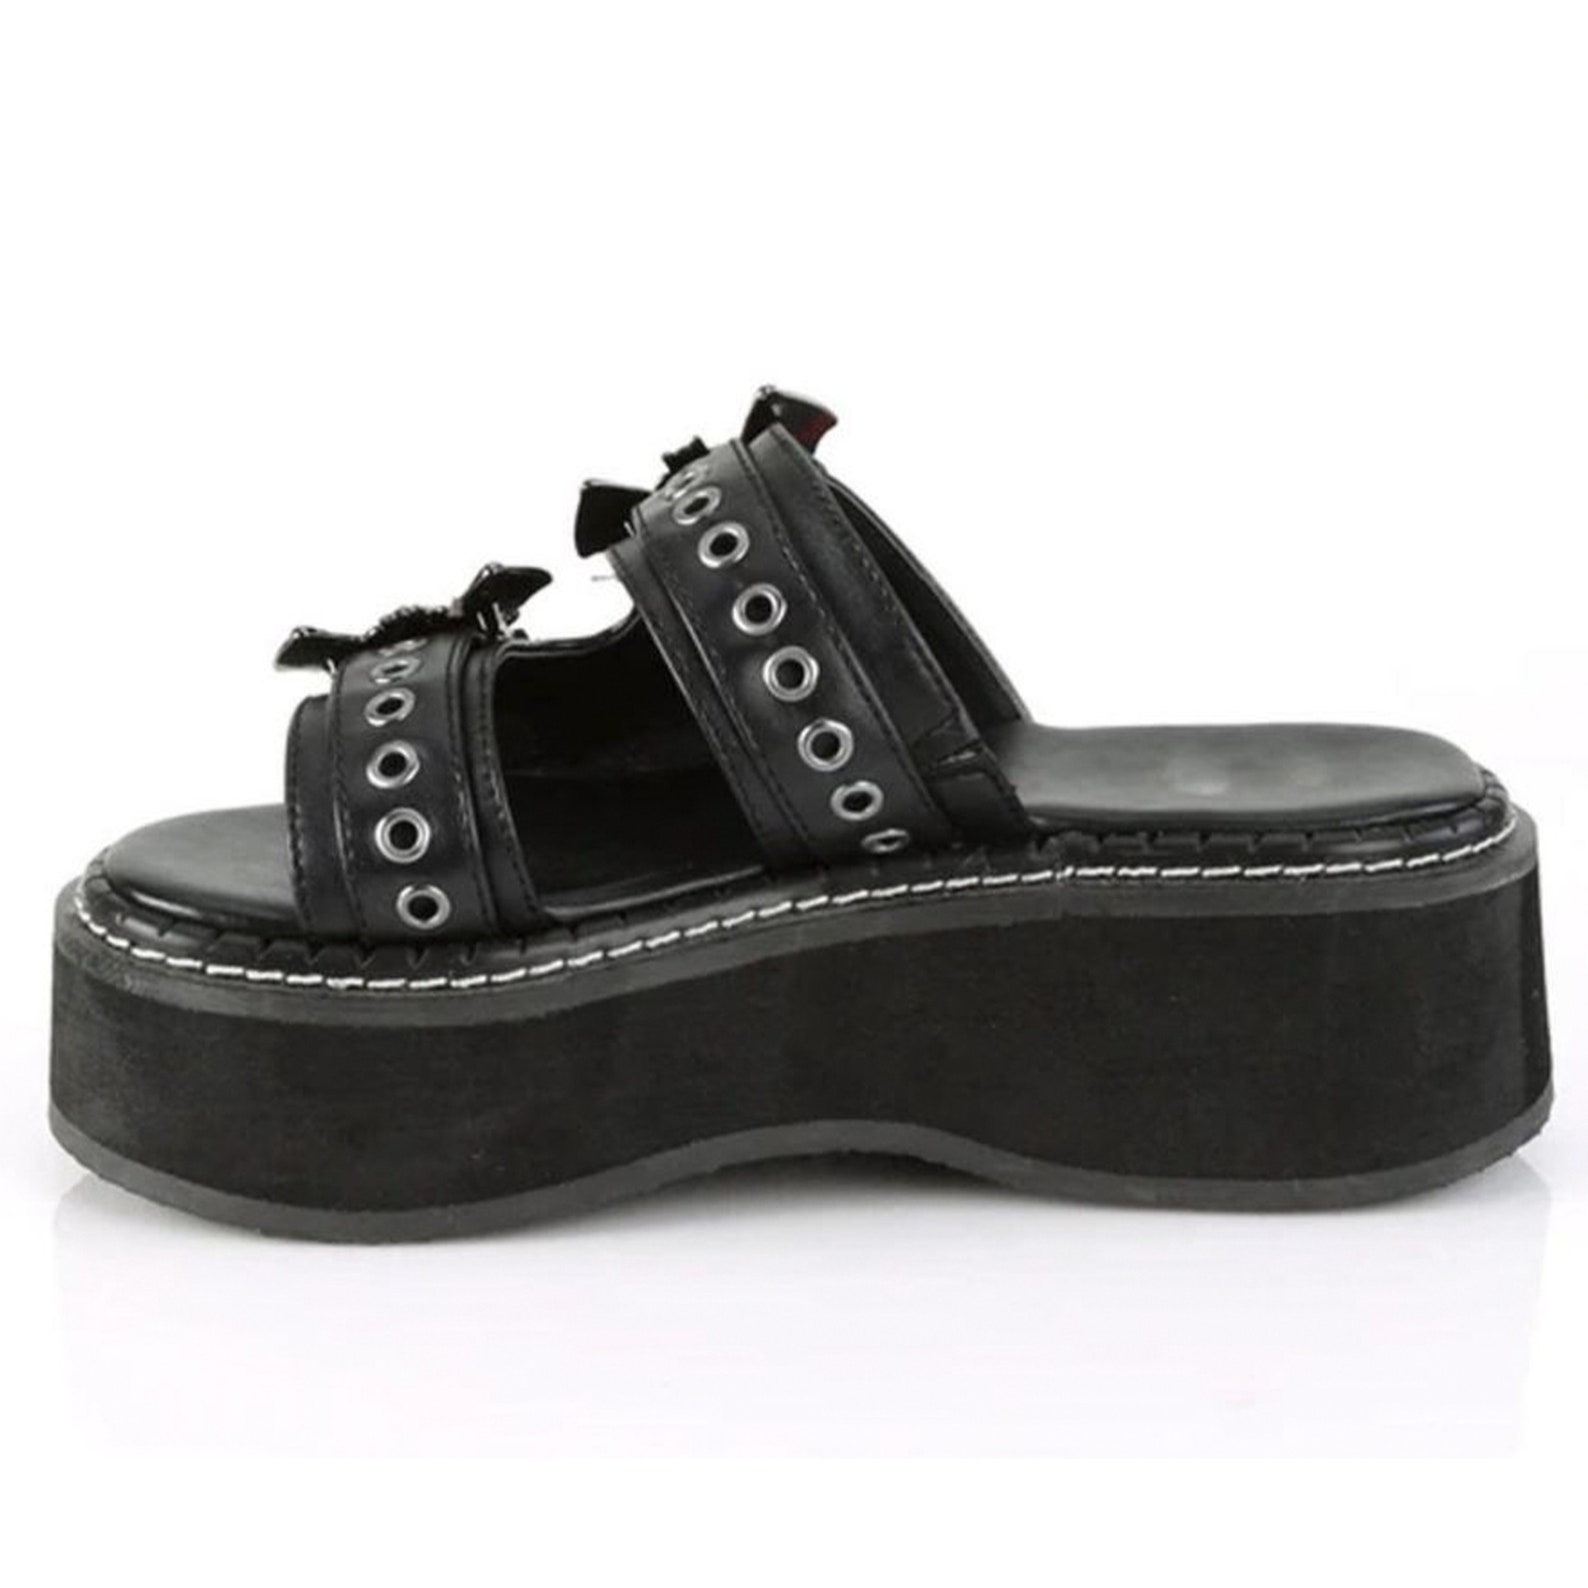 Black Gothic Slippers Platform Slippers Goth Lover Gift - Etsy